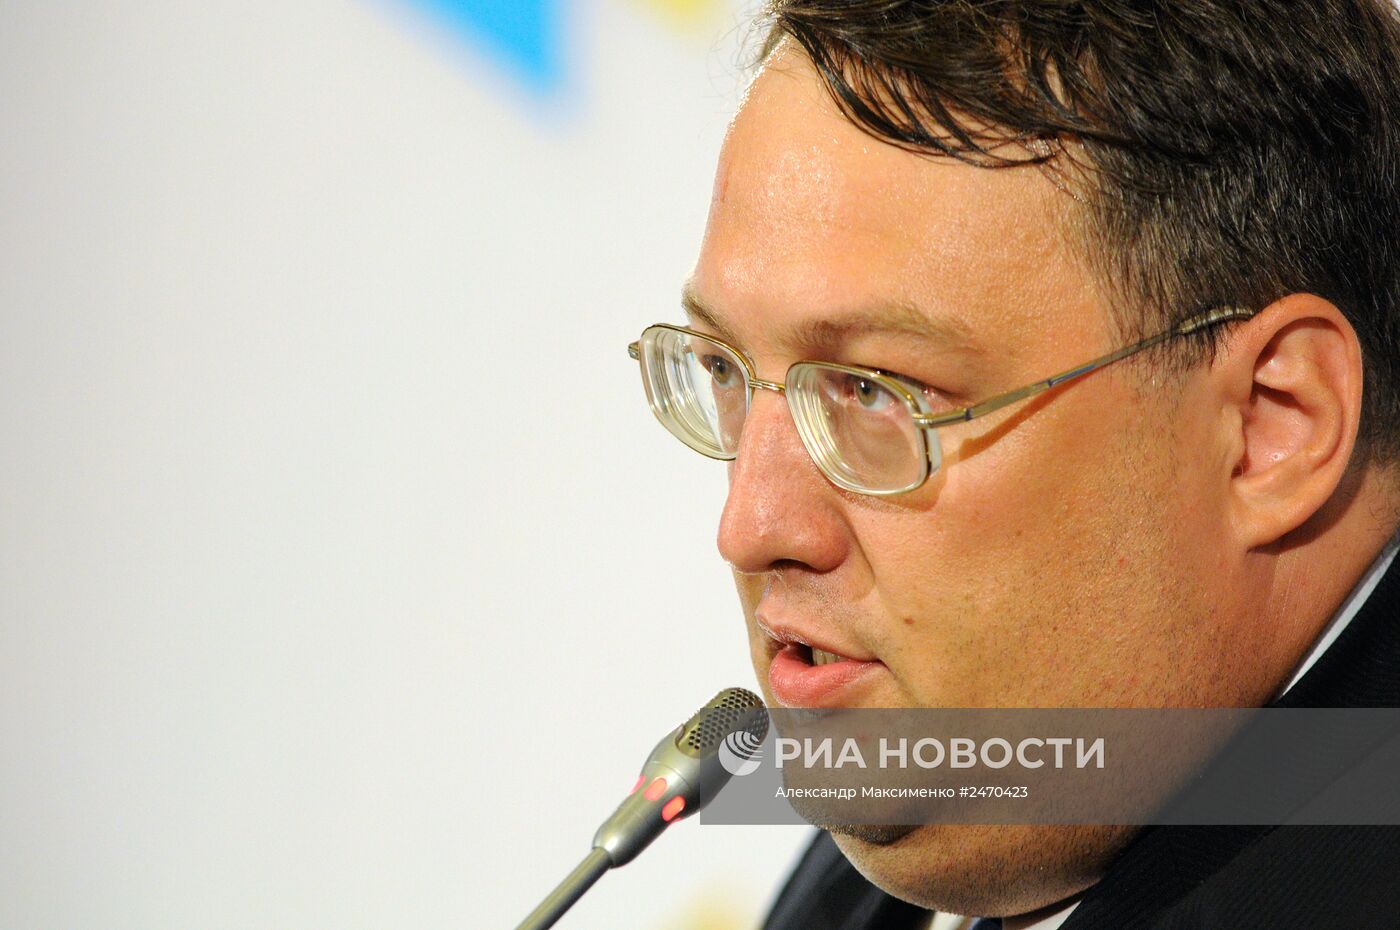 Брифинг советника главы МВД Украины Антона Геращенко